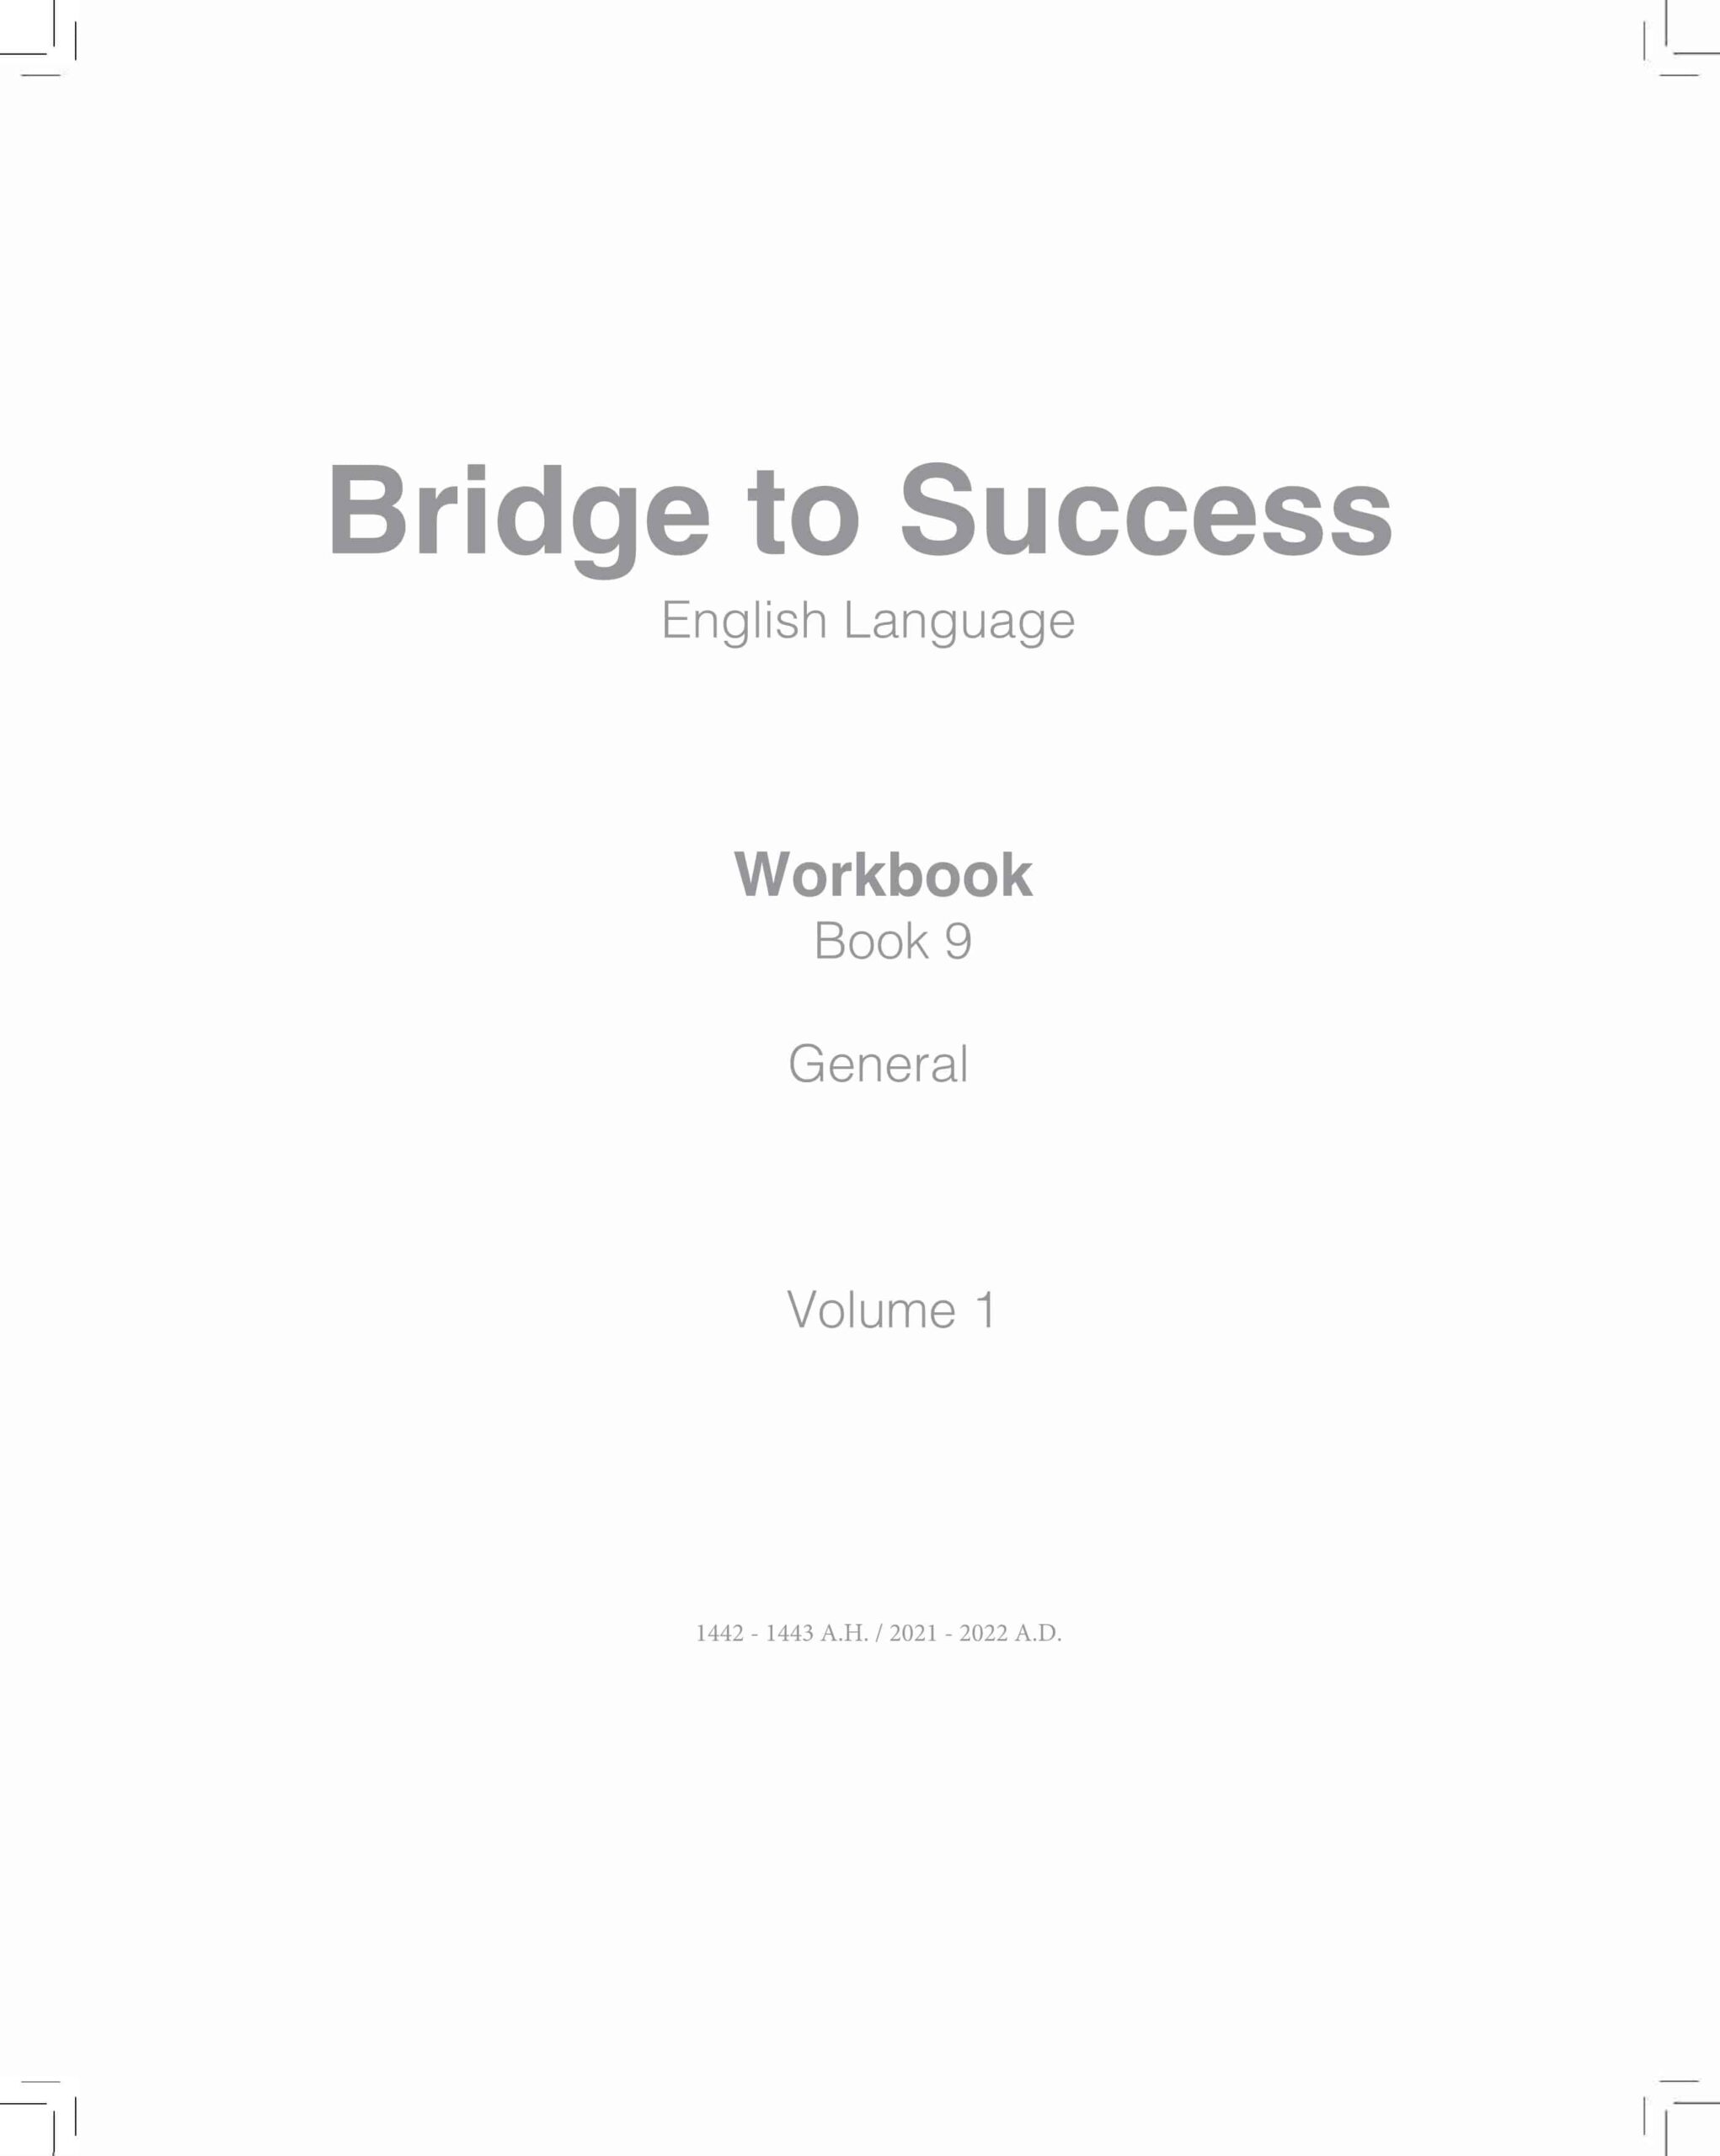 كتاب النشاط Work book اللغة الإنجليزية الصف التاسع الفصل الدراسي الأول 2021-2022